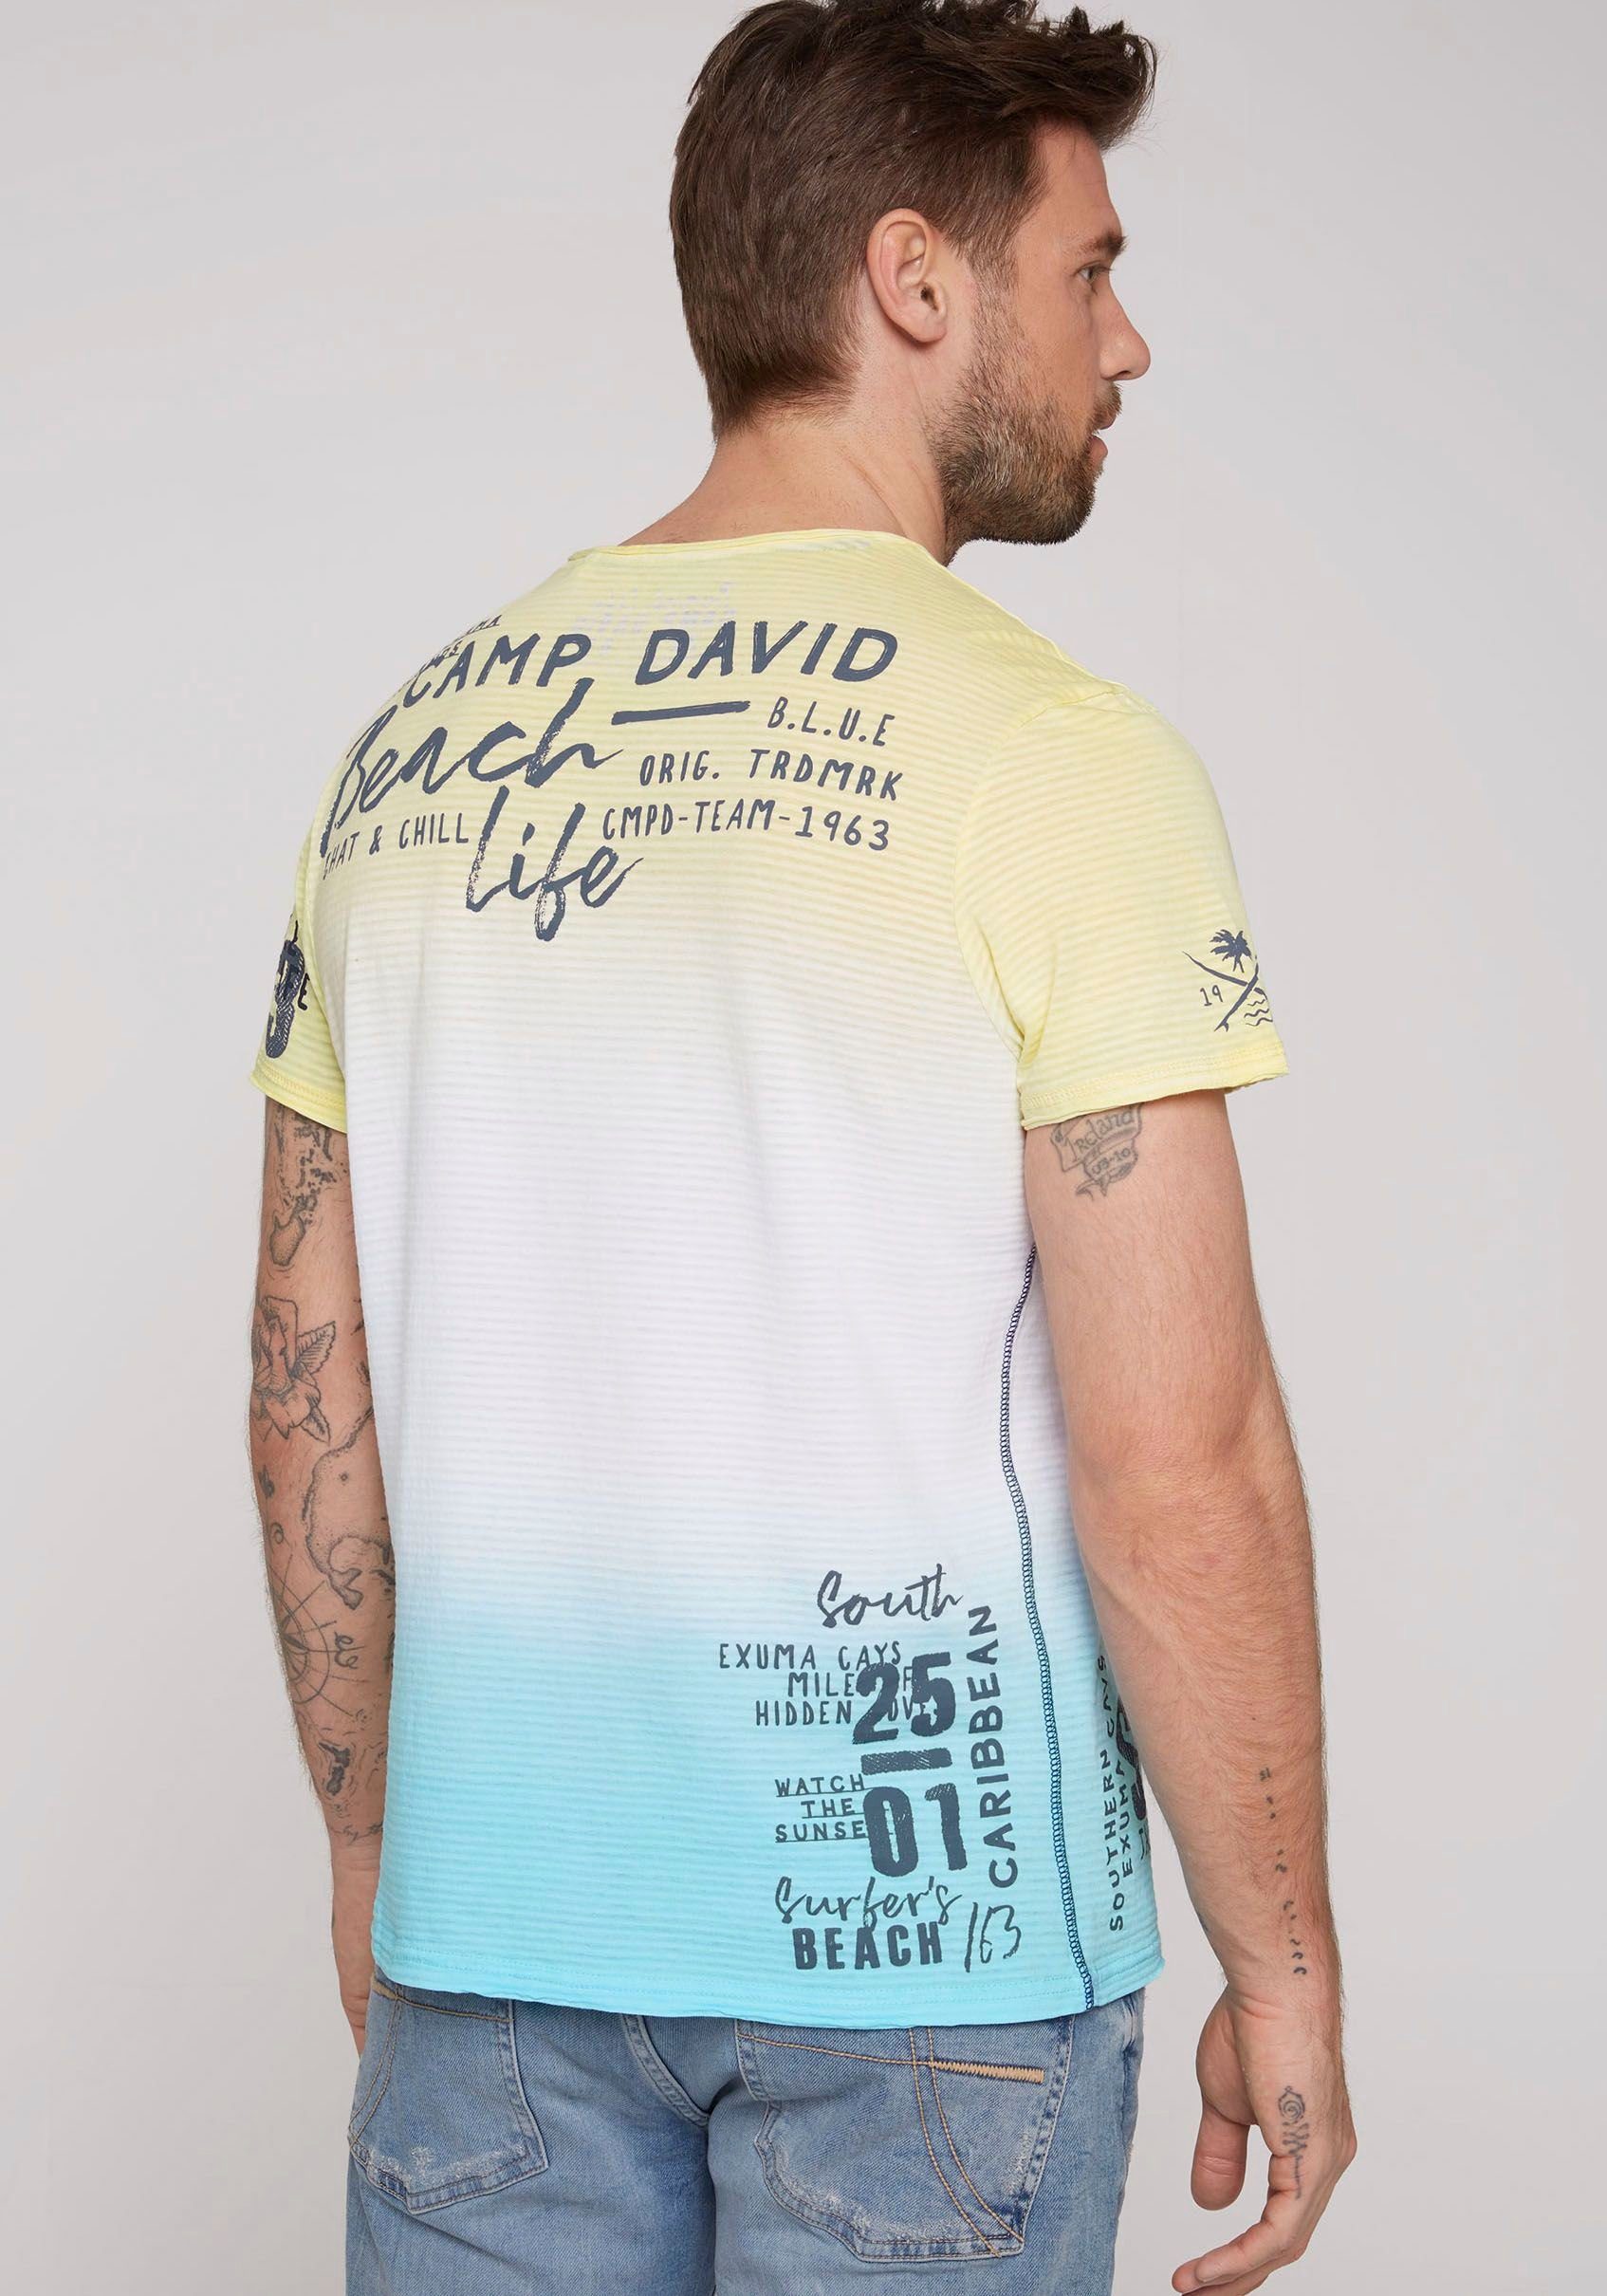 DAVID CAMP Schriftzügen sun mit T-Shirt banana